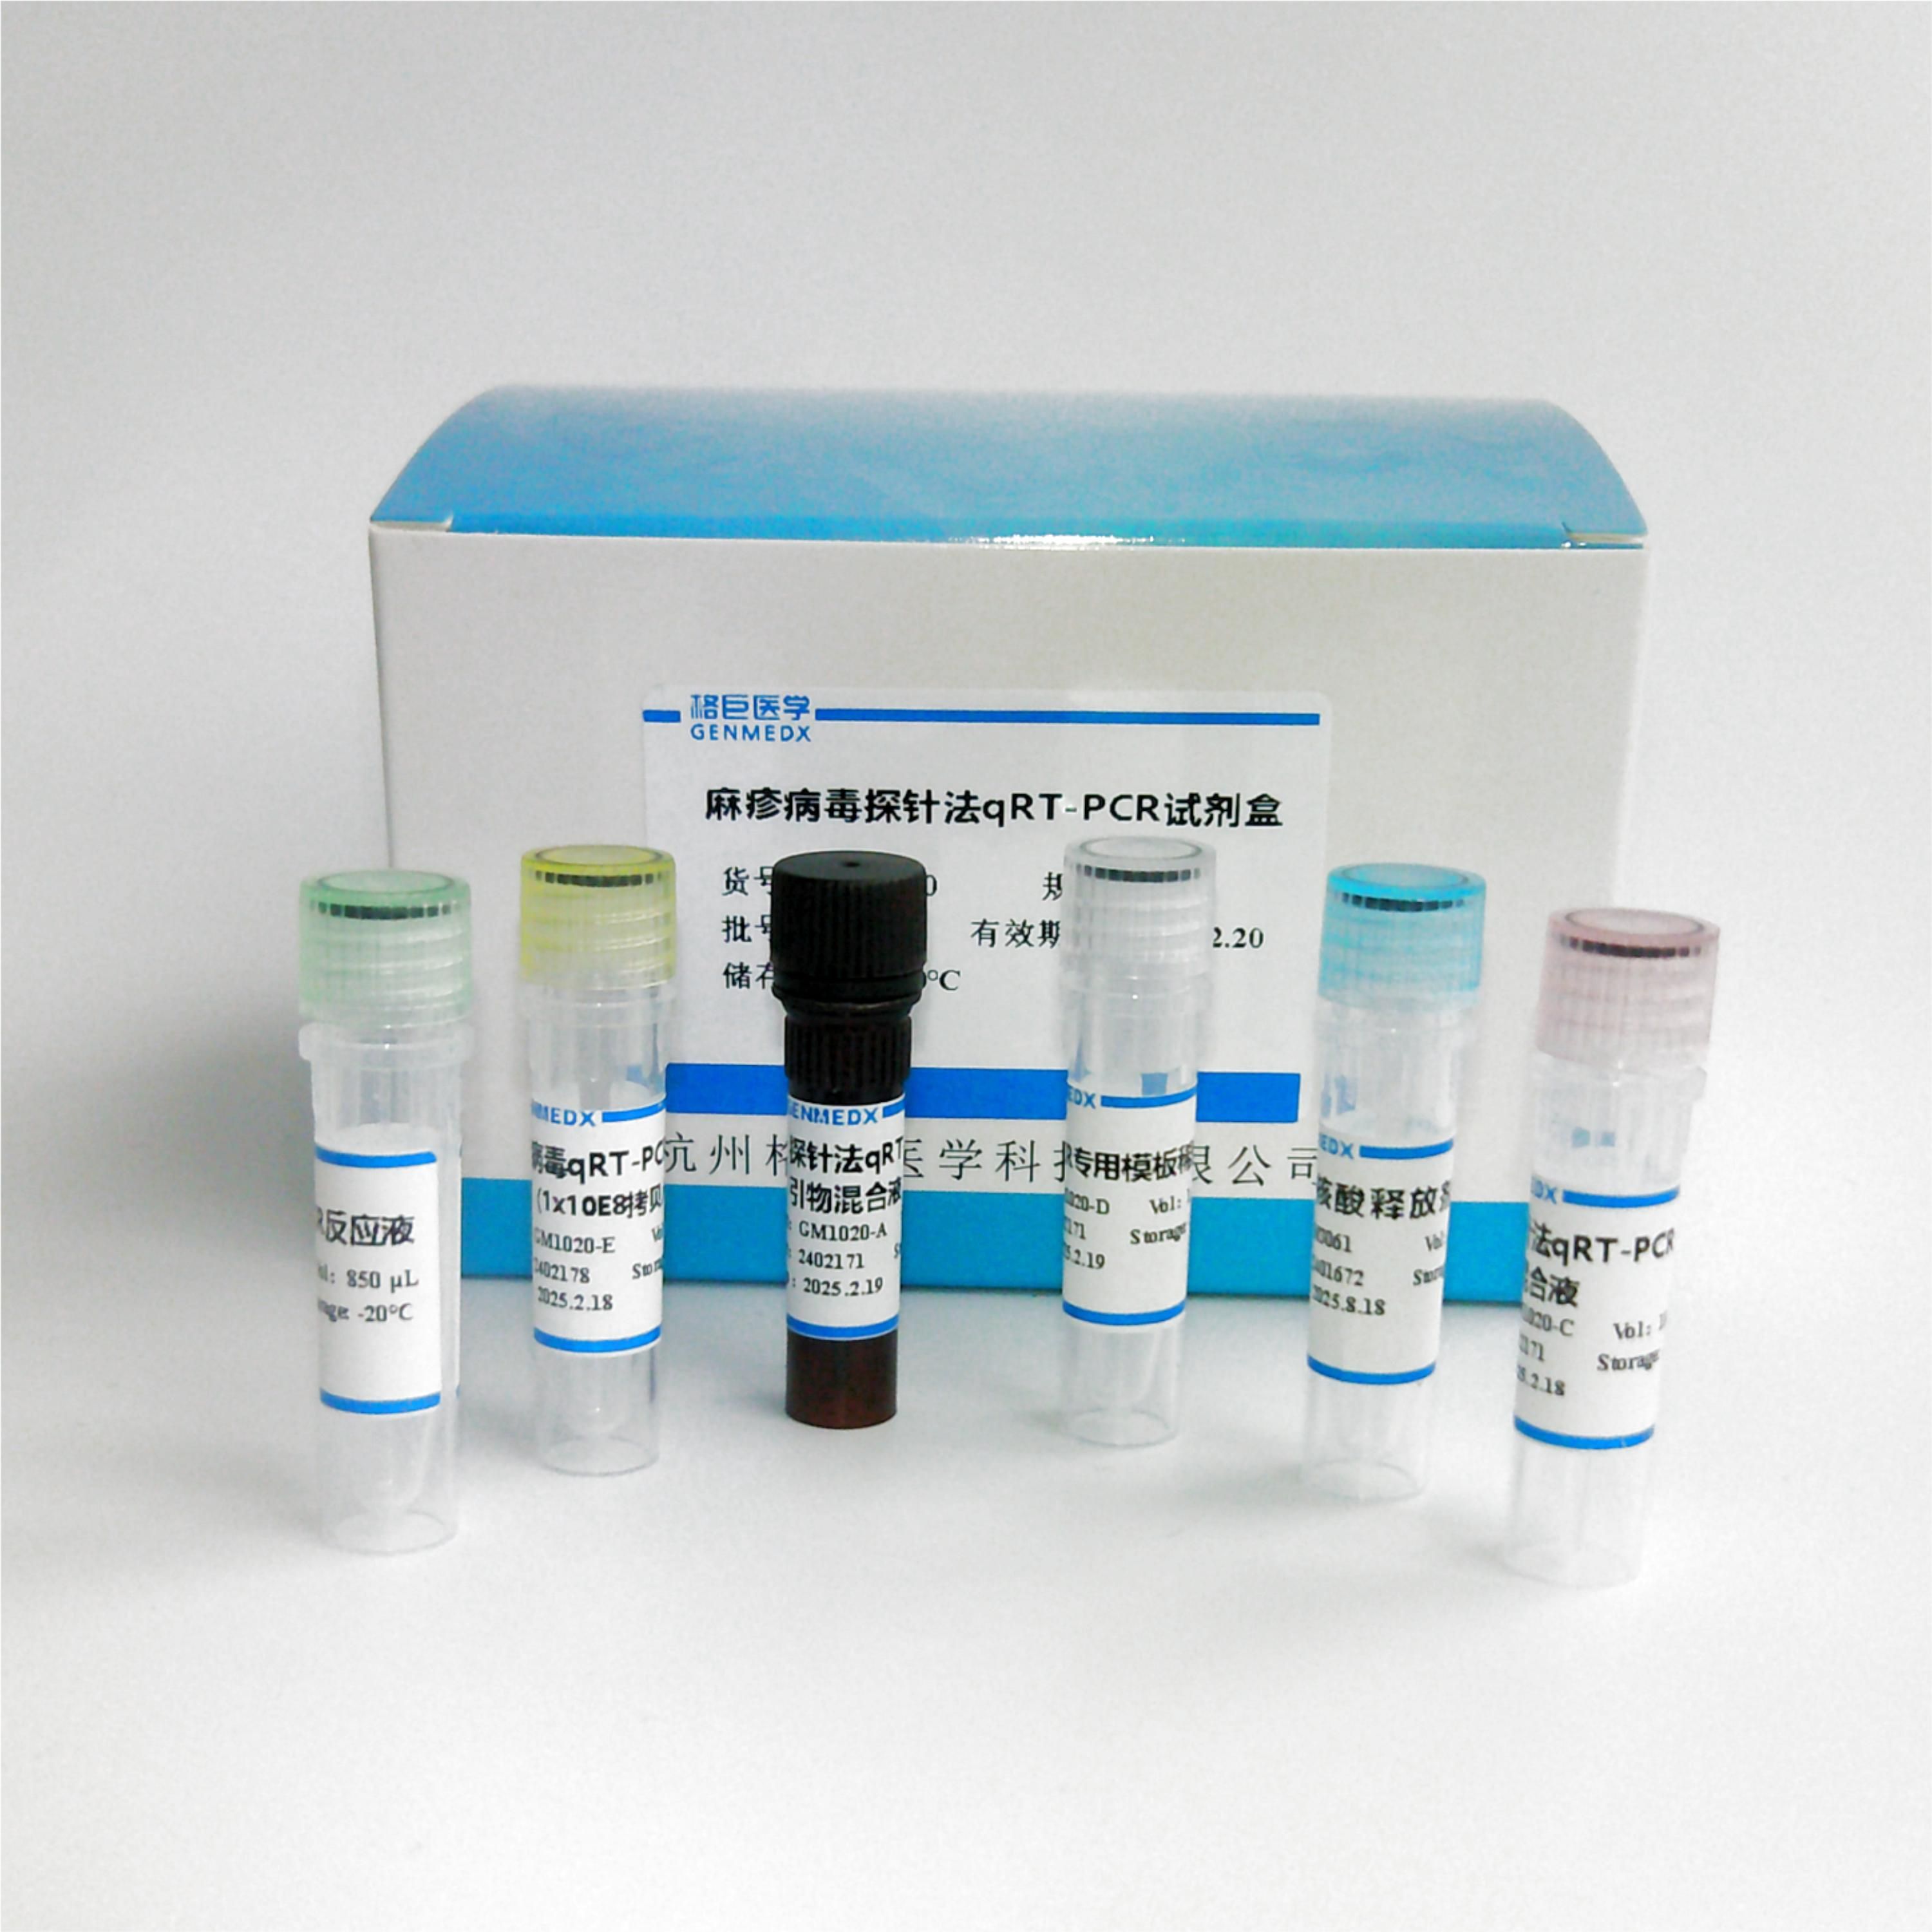 登革热病毒探针法荧光定量RT-PCR试剂盒